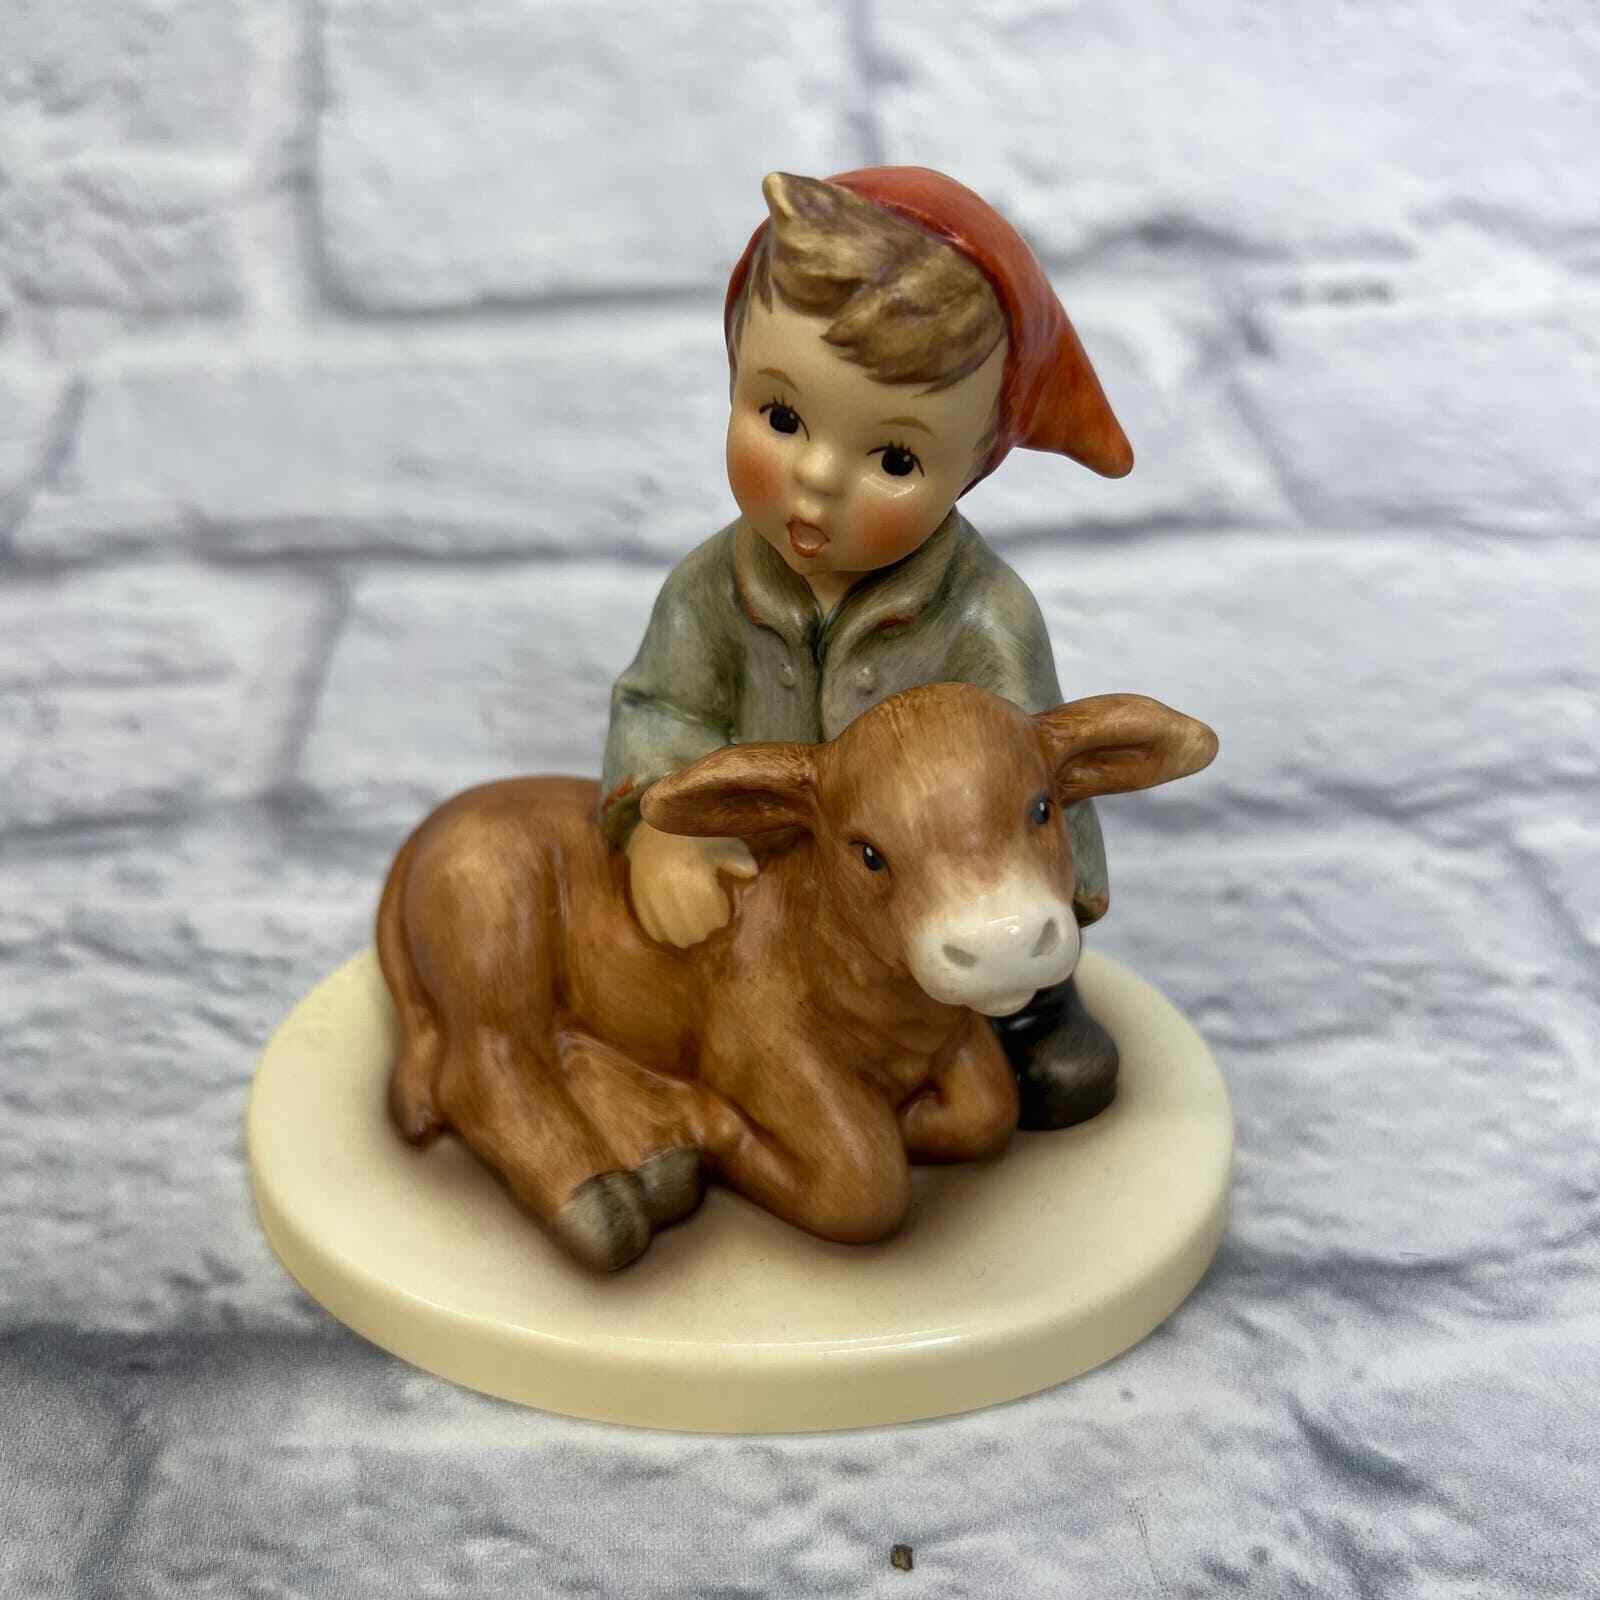 Hummel Cuddly Calf Figurine 2010 2324 3.5" Boy Cow Goebel Germany 